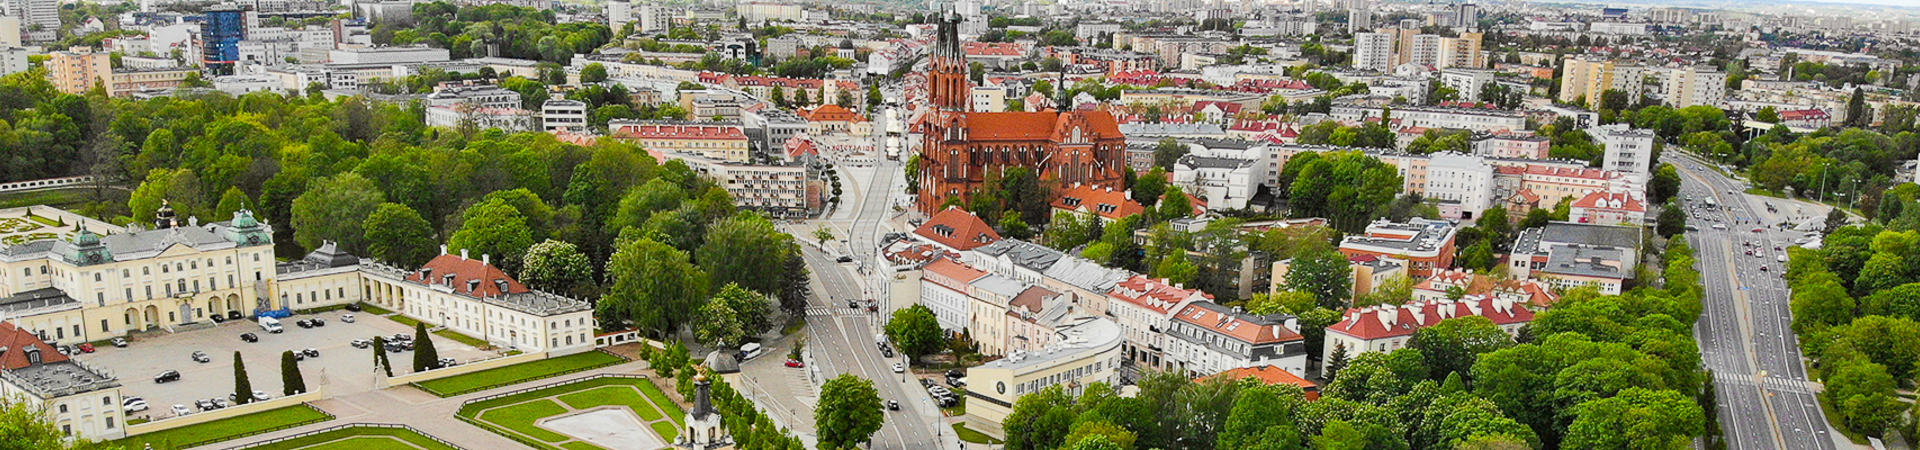 Panorama miasta Białystok, widok z lotu ptaka, z lewej strony znajduje się Pałac Branickich na środku Katedra Białostocka Kościół Farny